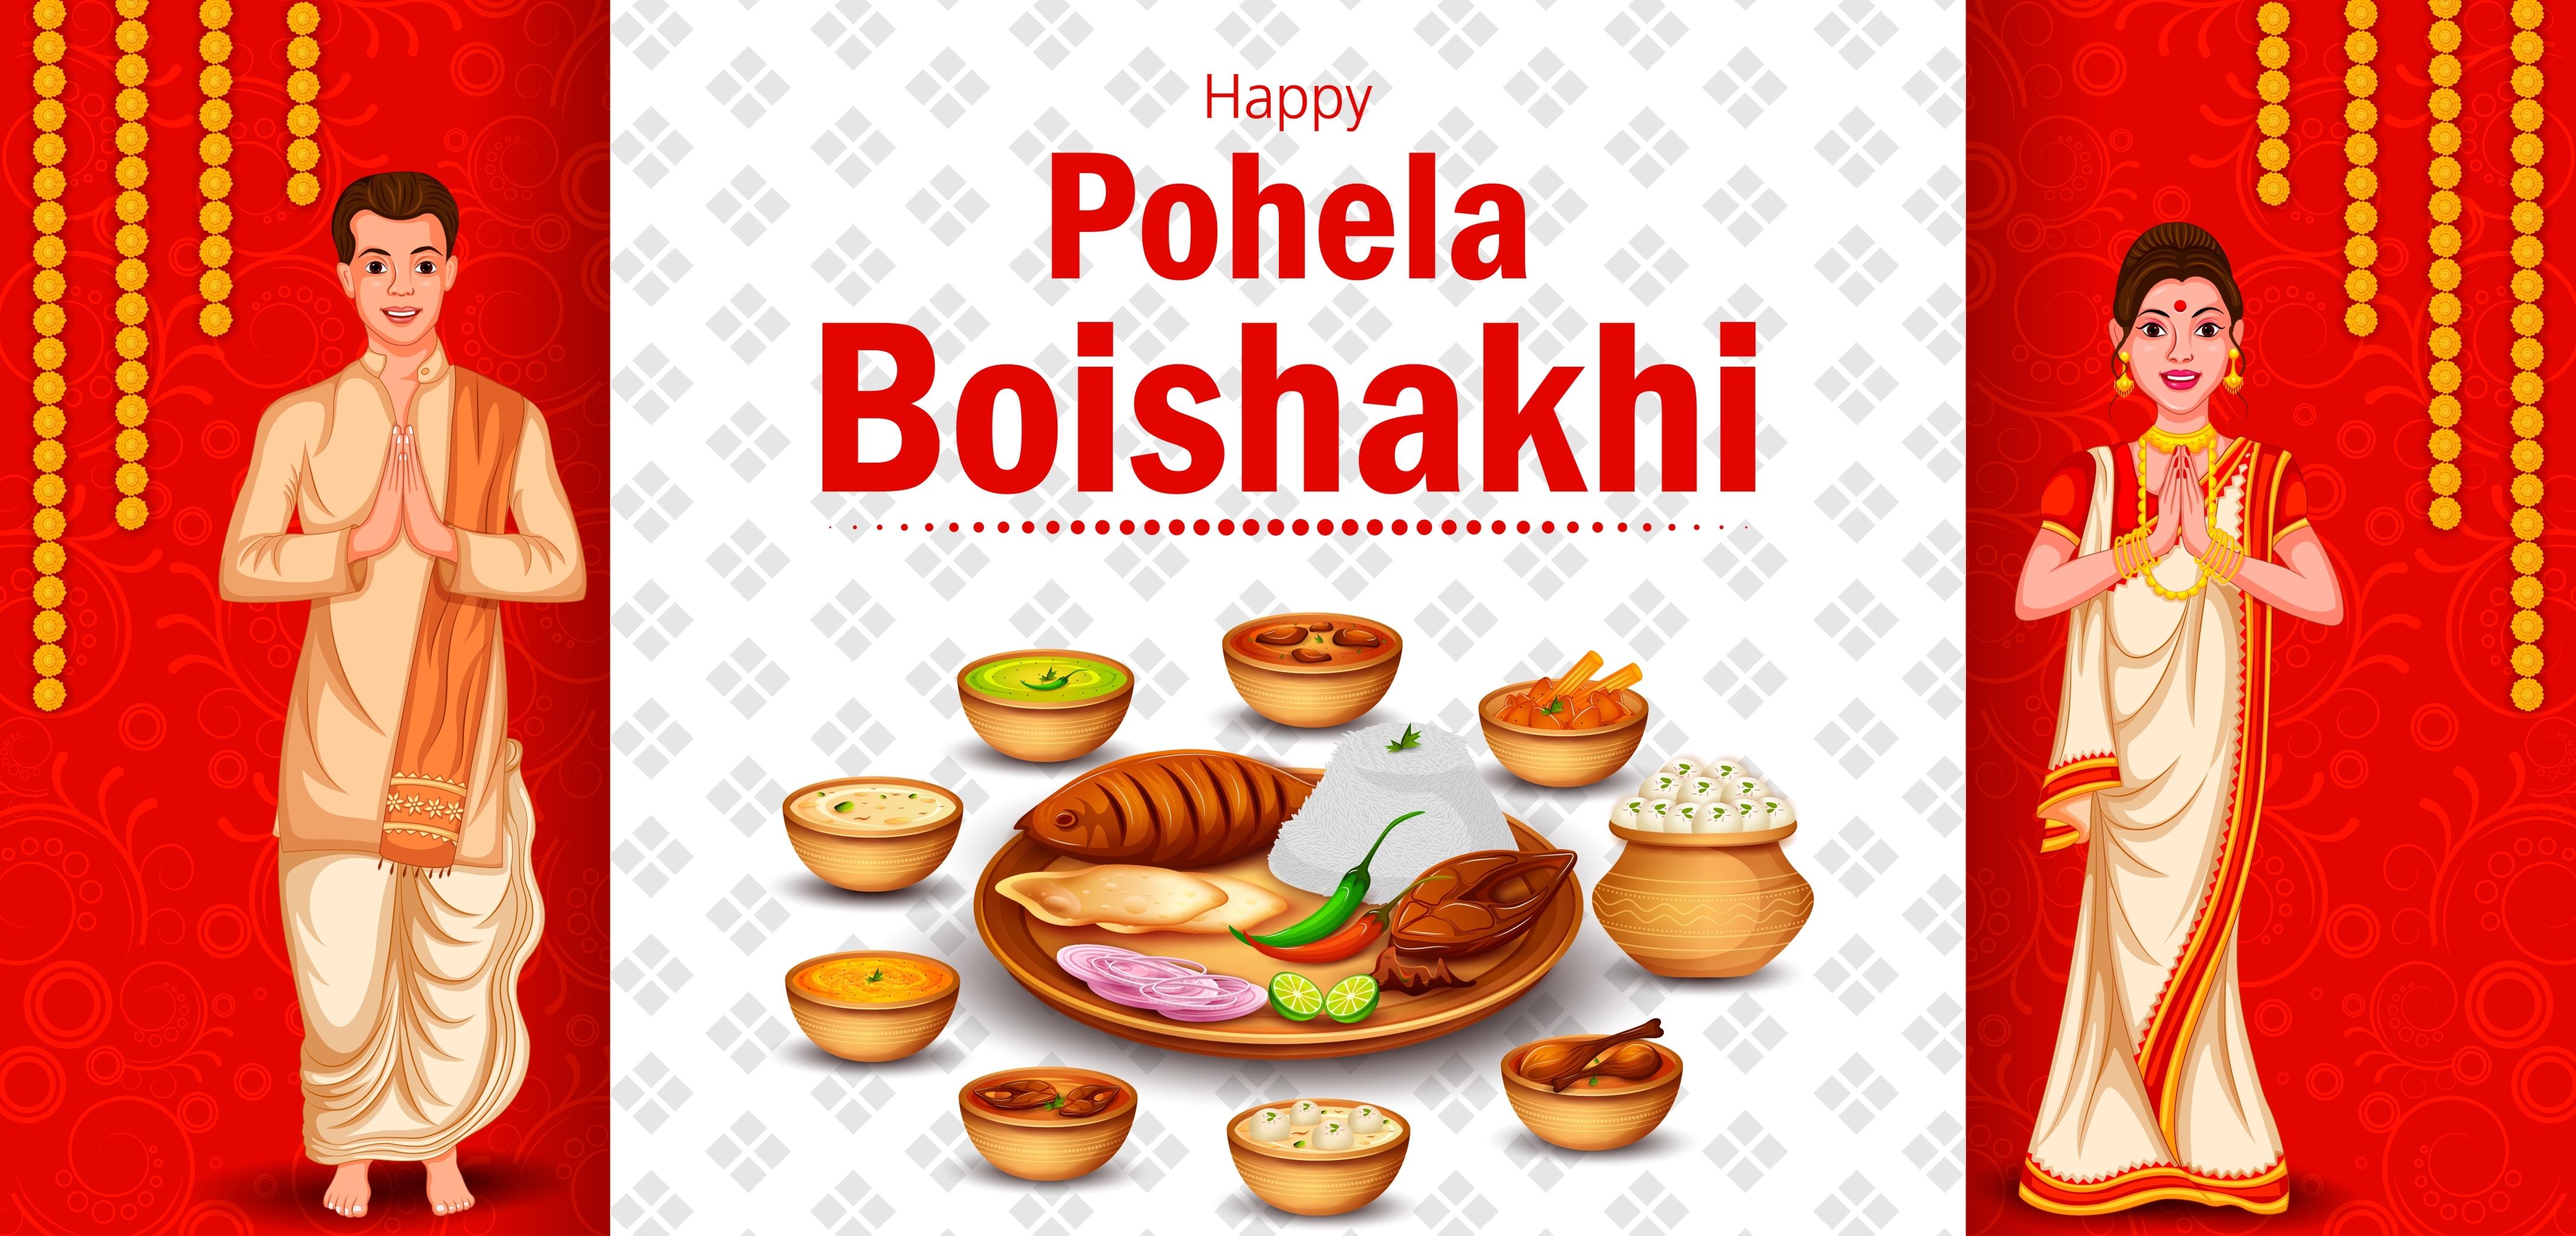 pohela boishakh essay in bengali language